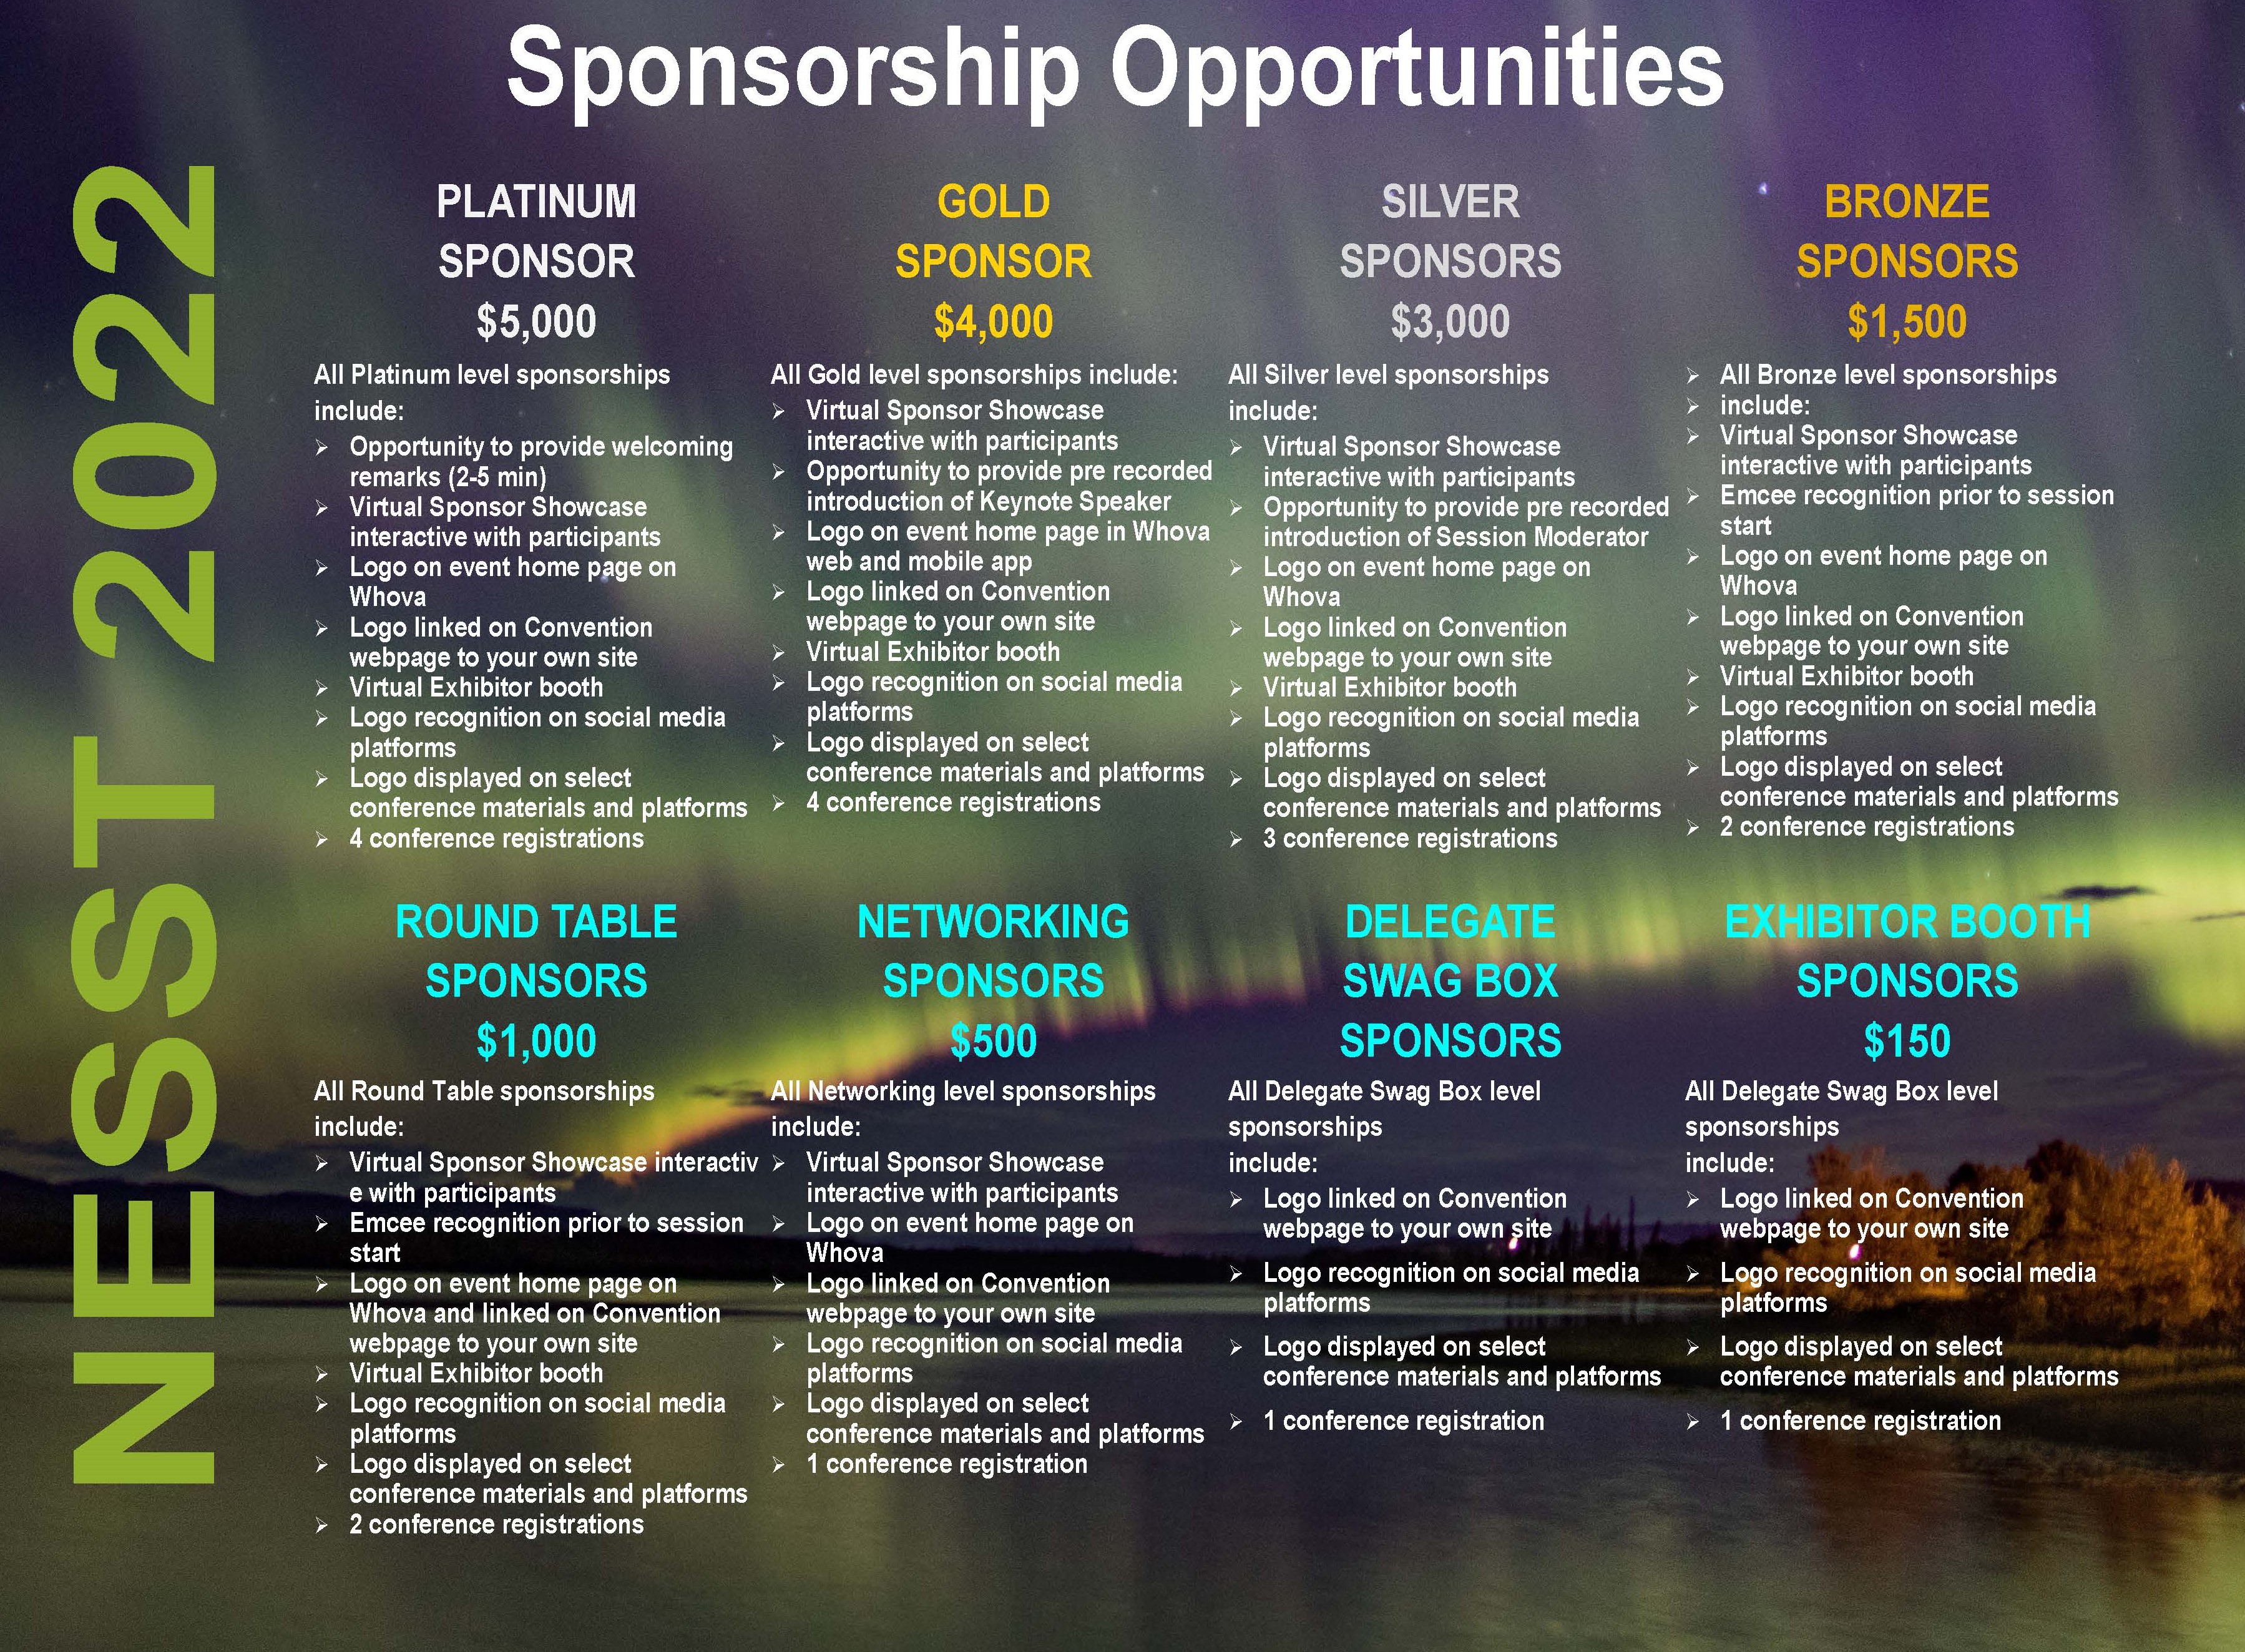 NESST 2022 Sponsorship Opportunities20211126CY+16yDDJM 2.jpg